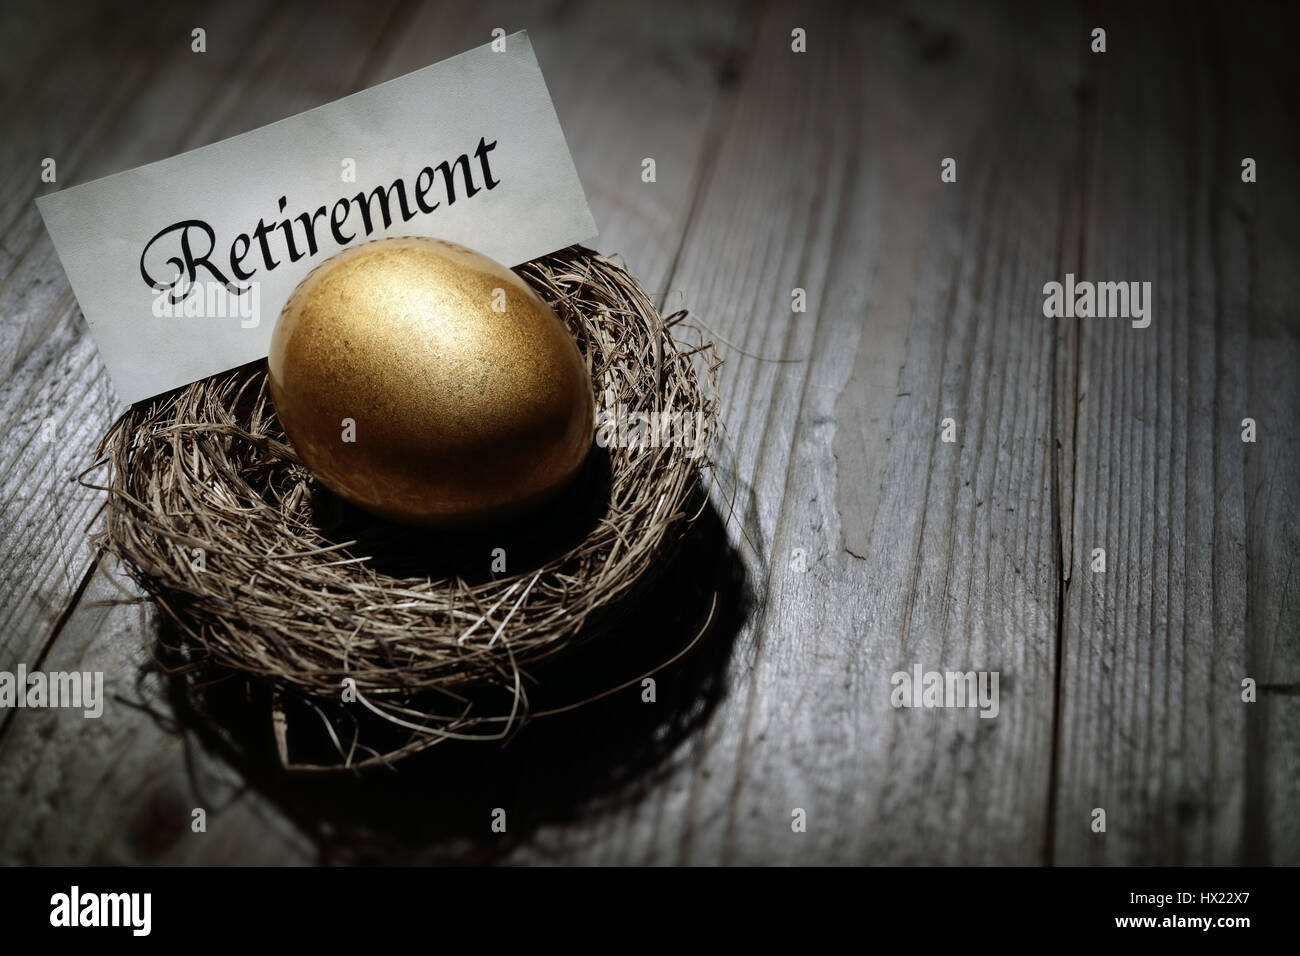 Golden nest egg concept for retirement savings Stock Photo